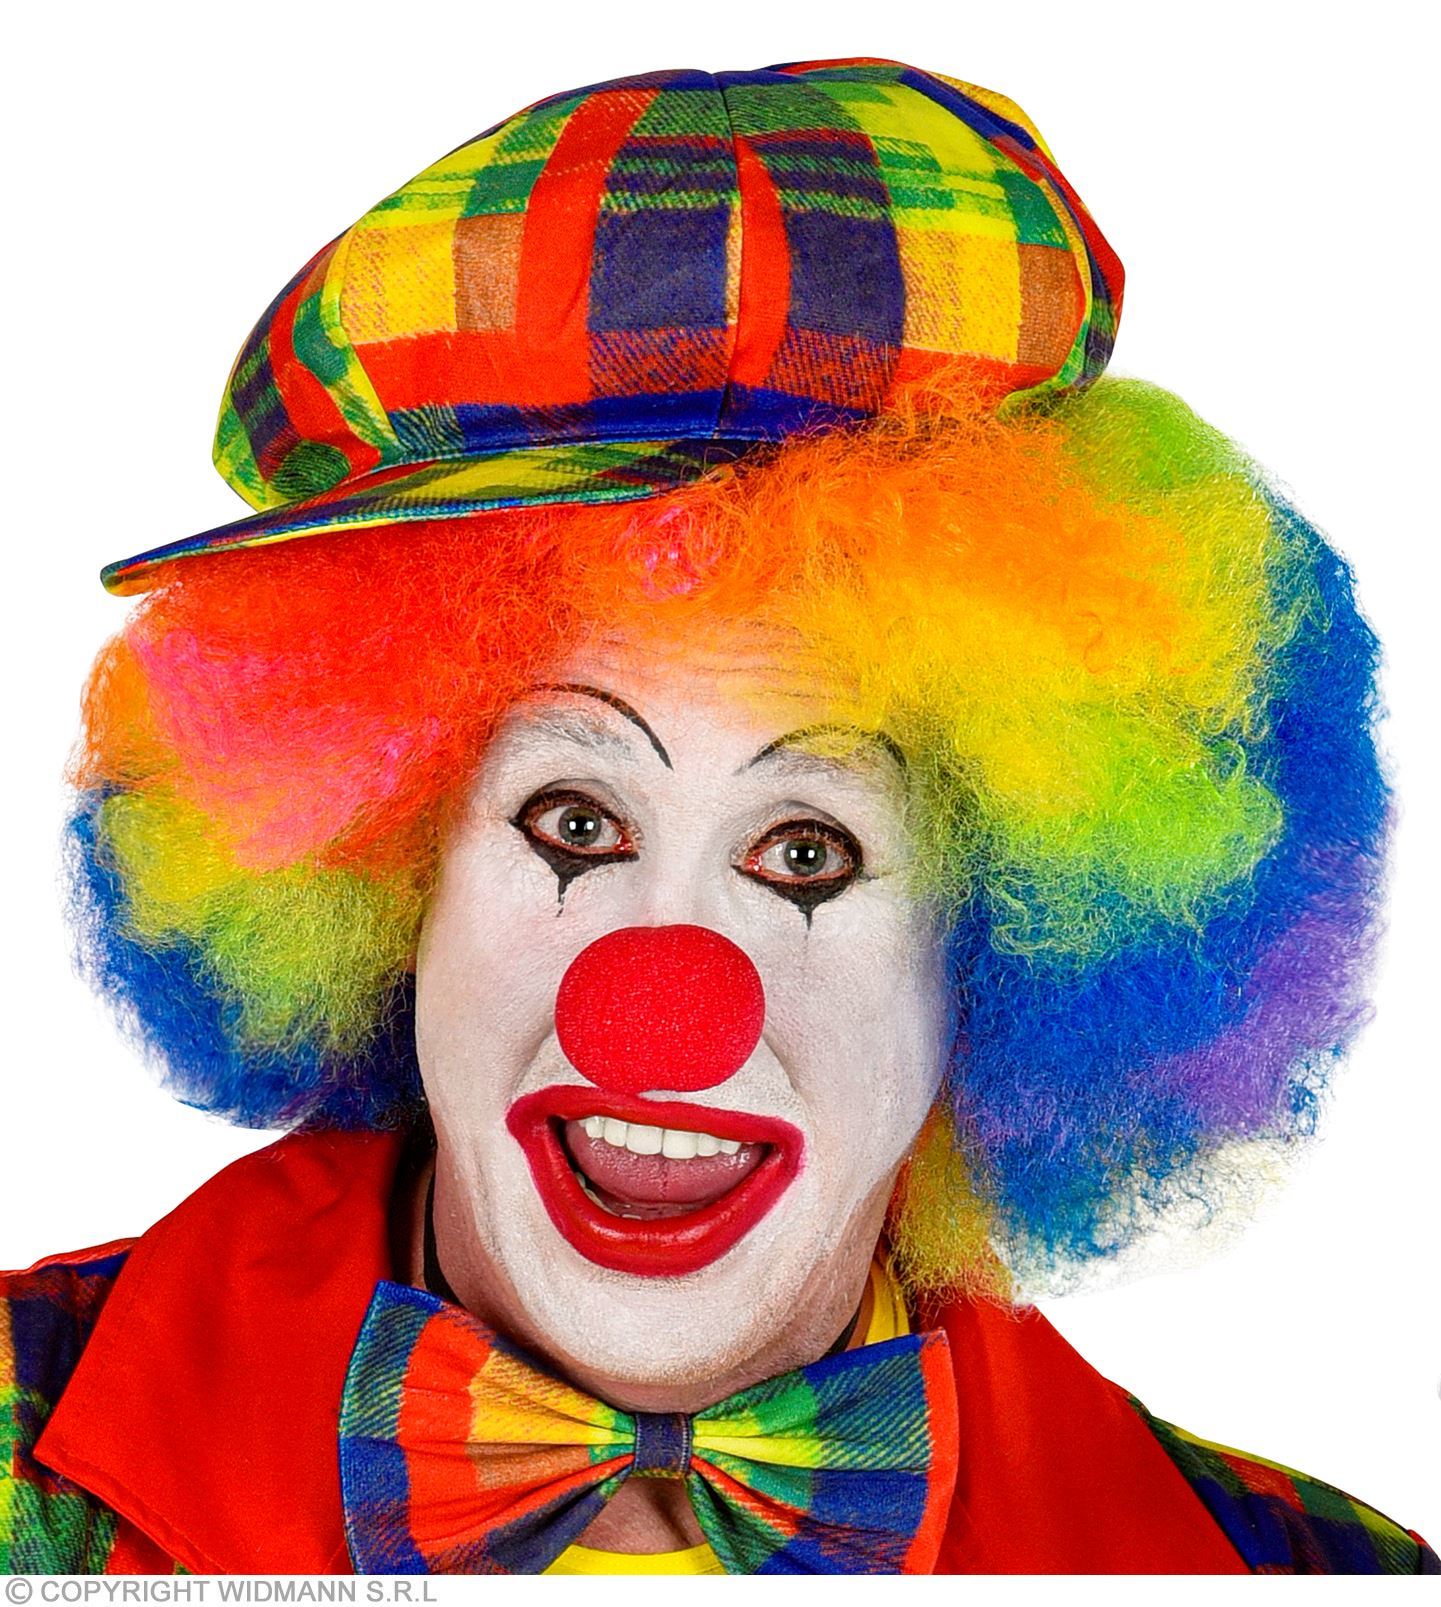 Clownspet voor volwassen met vrolijke kleuren